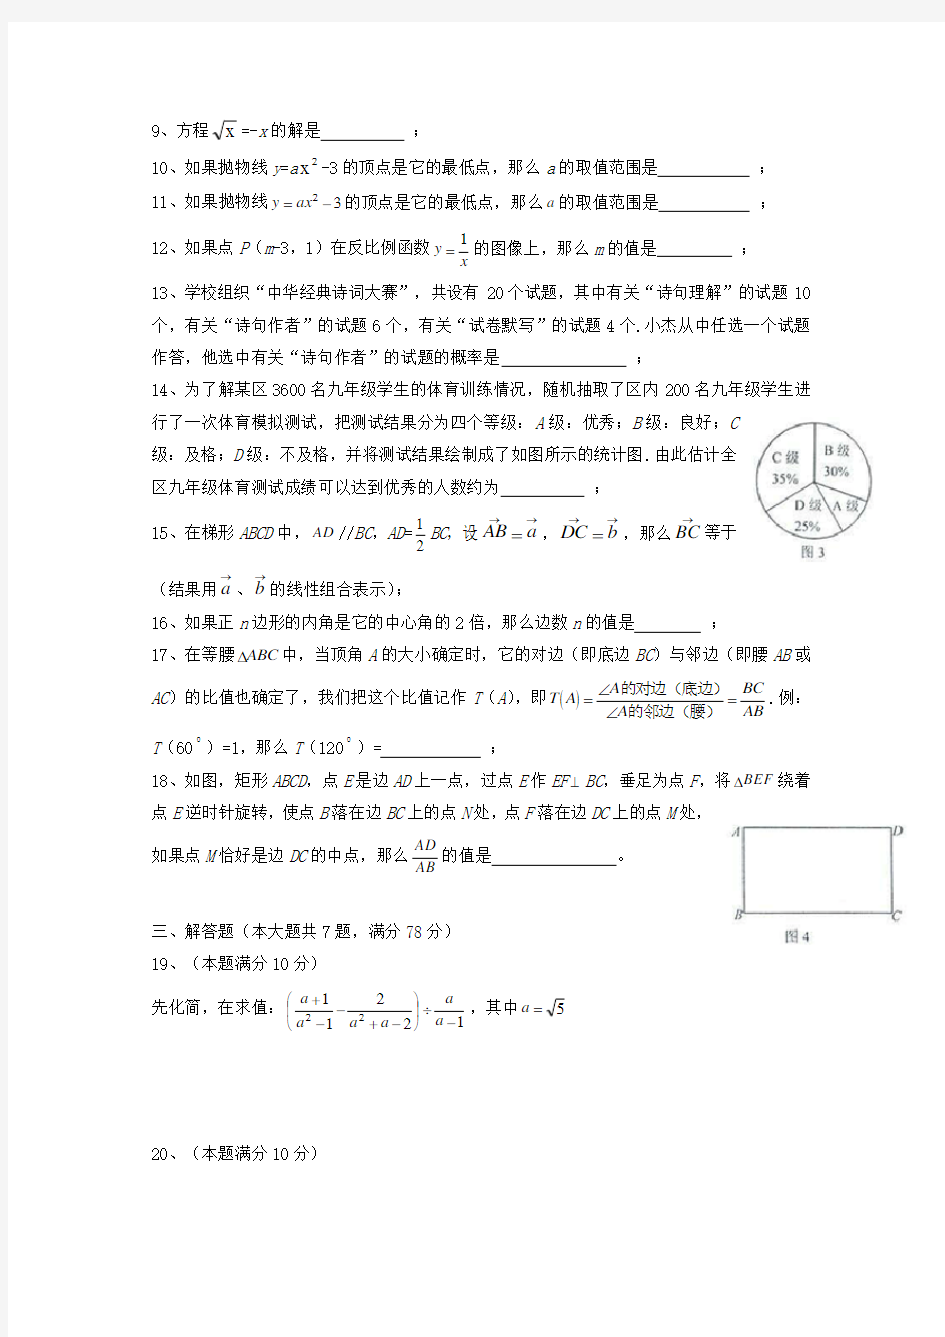 【2021年】上海市中考数学模拟试题汇编(含答案)